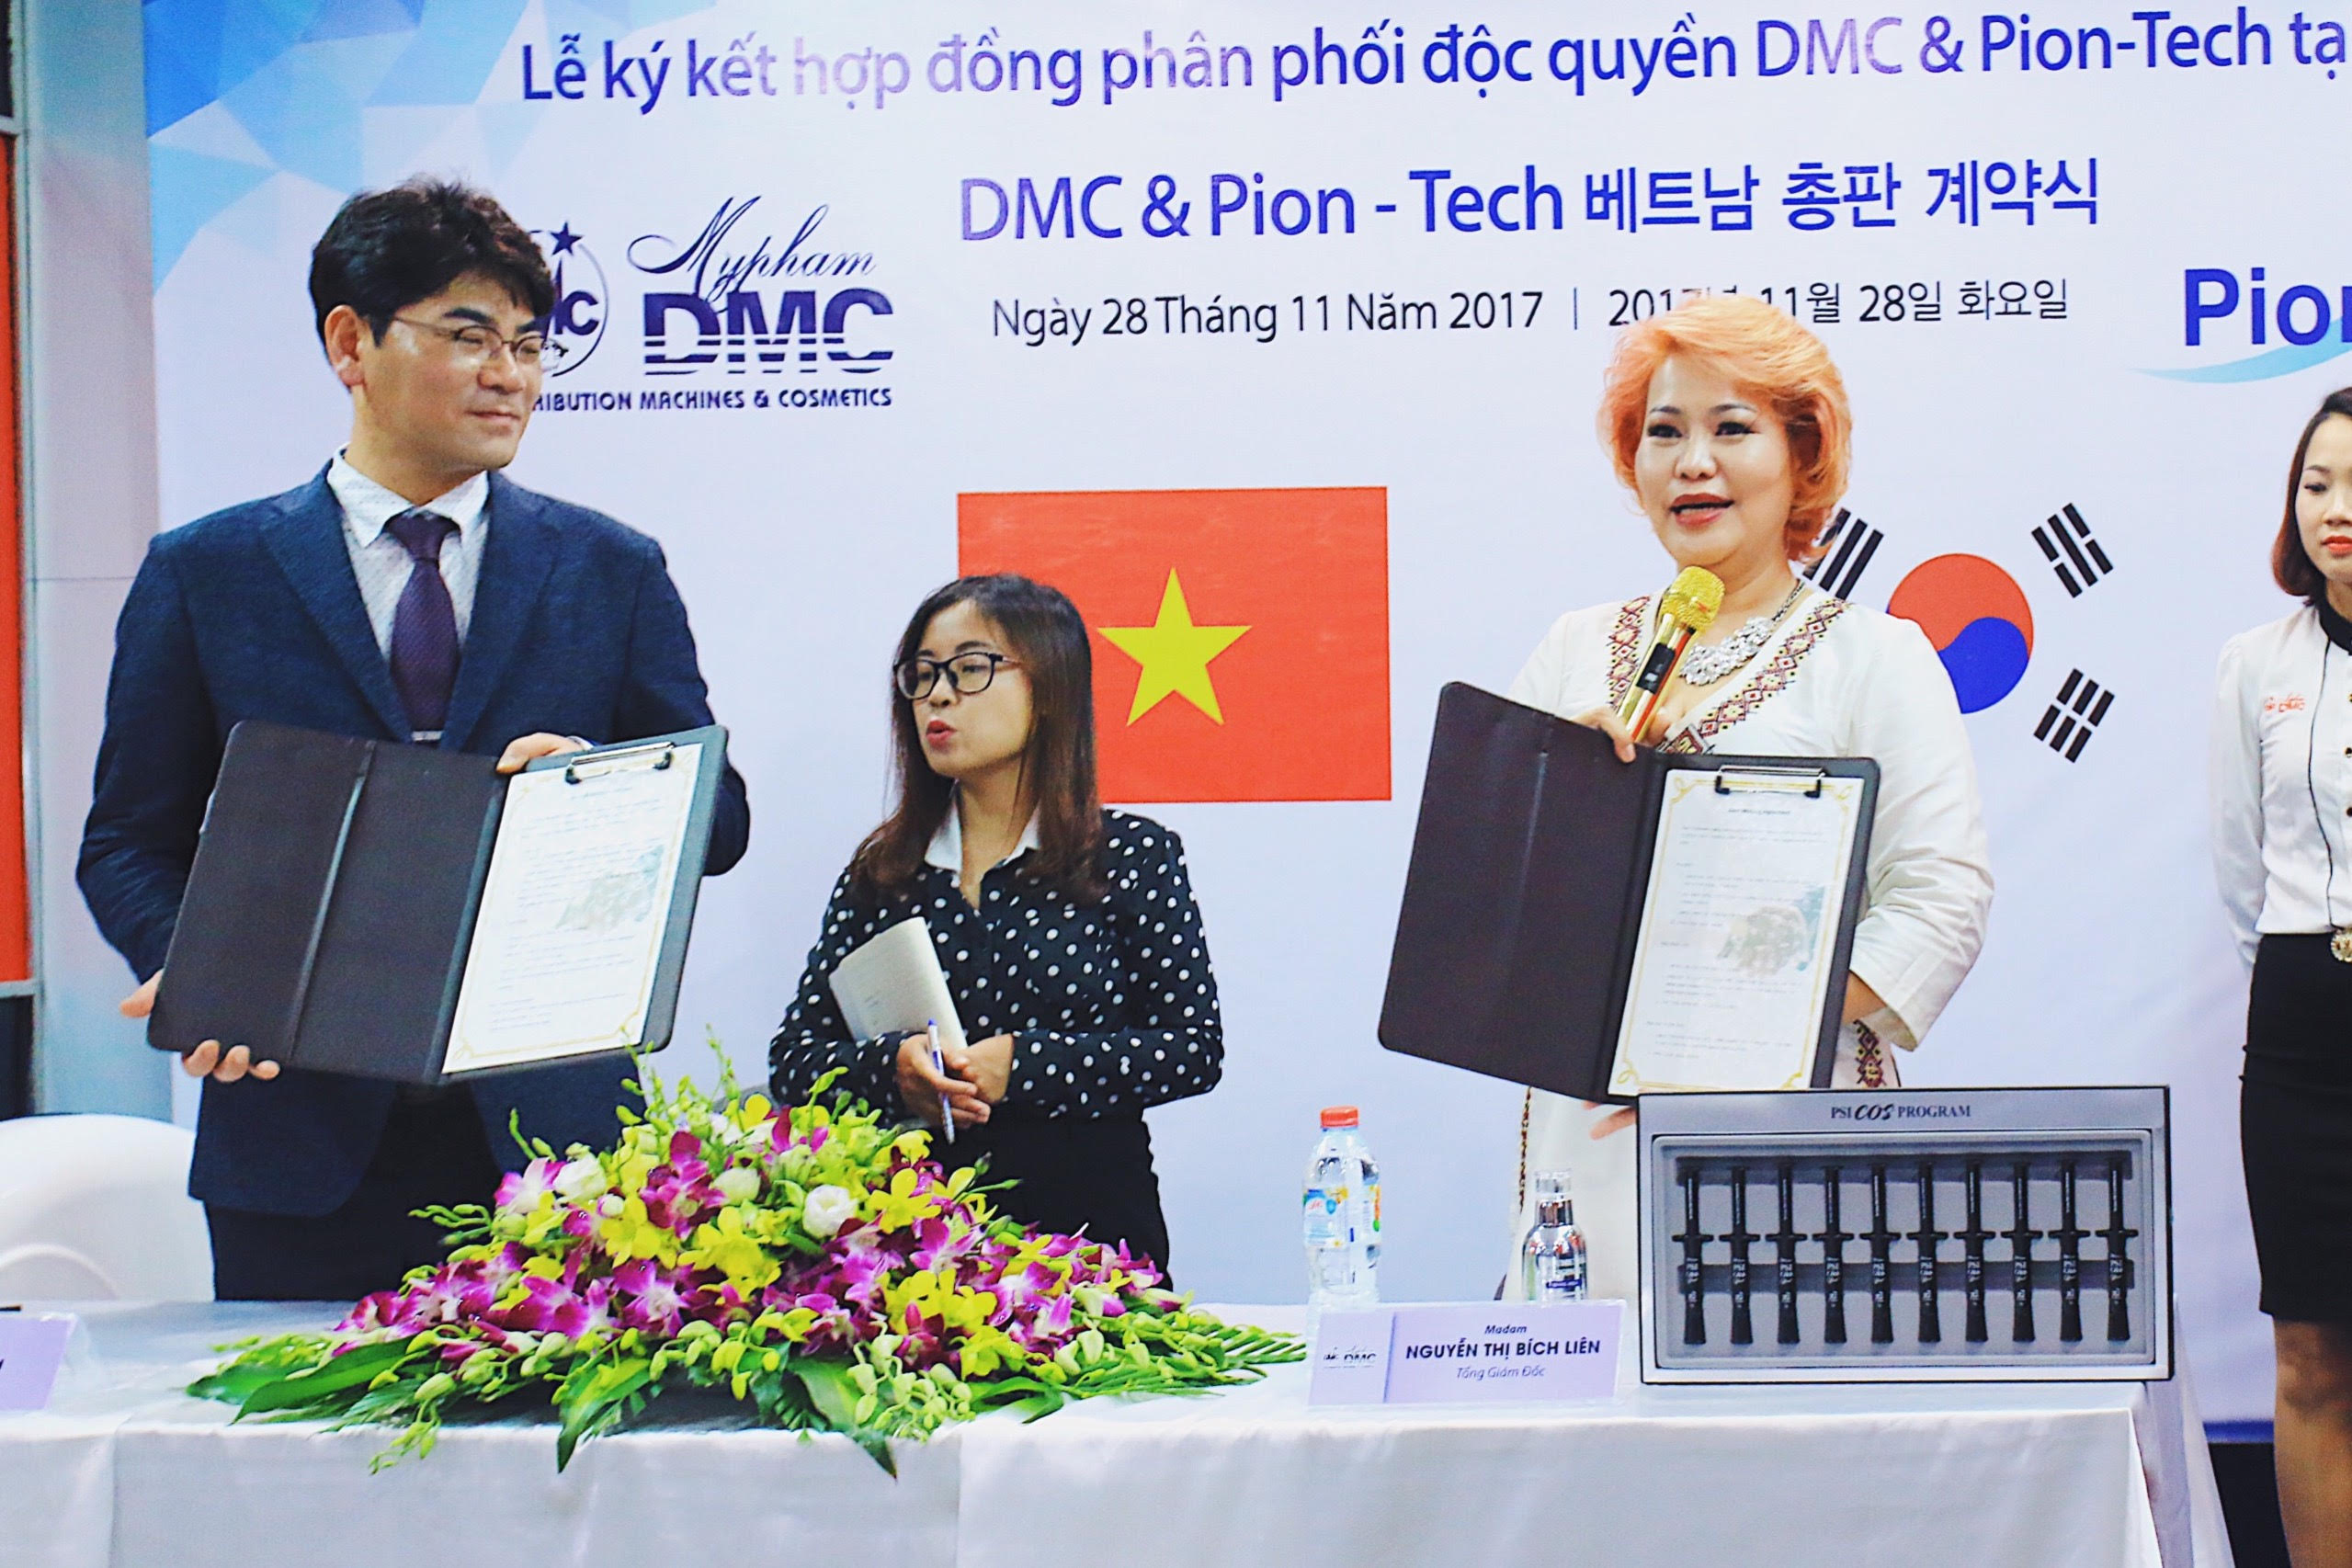 Mỹ phẩm DMC họp báo ra mắt sản phẩm Vi kim Hàn Quốc tại Việt Nam